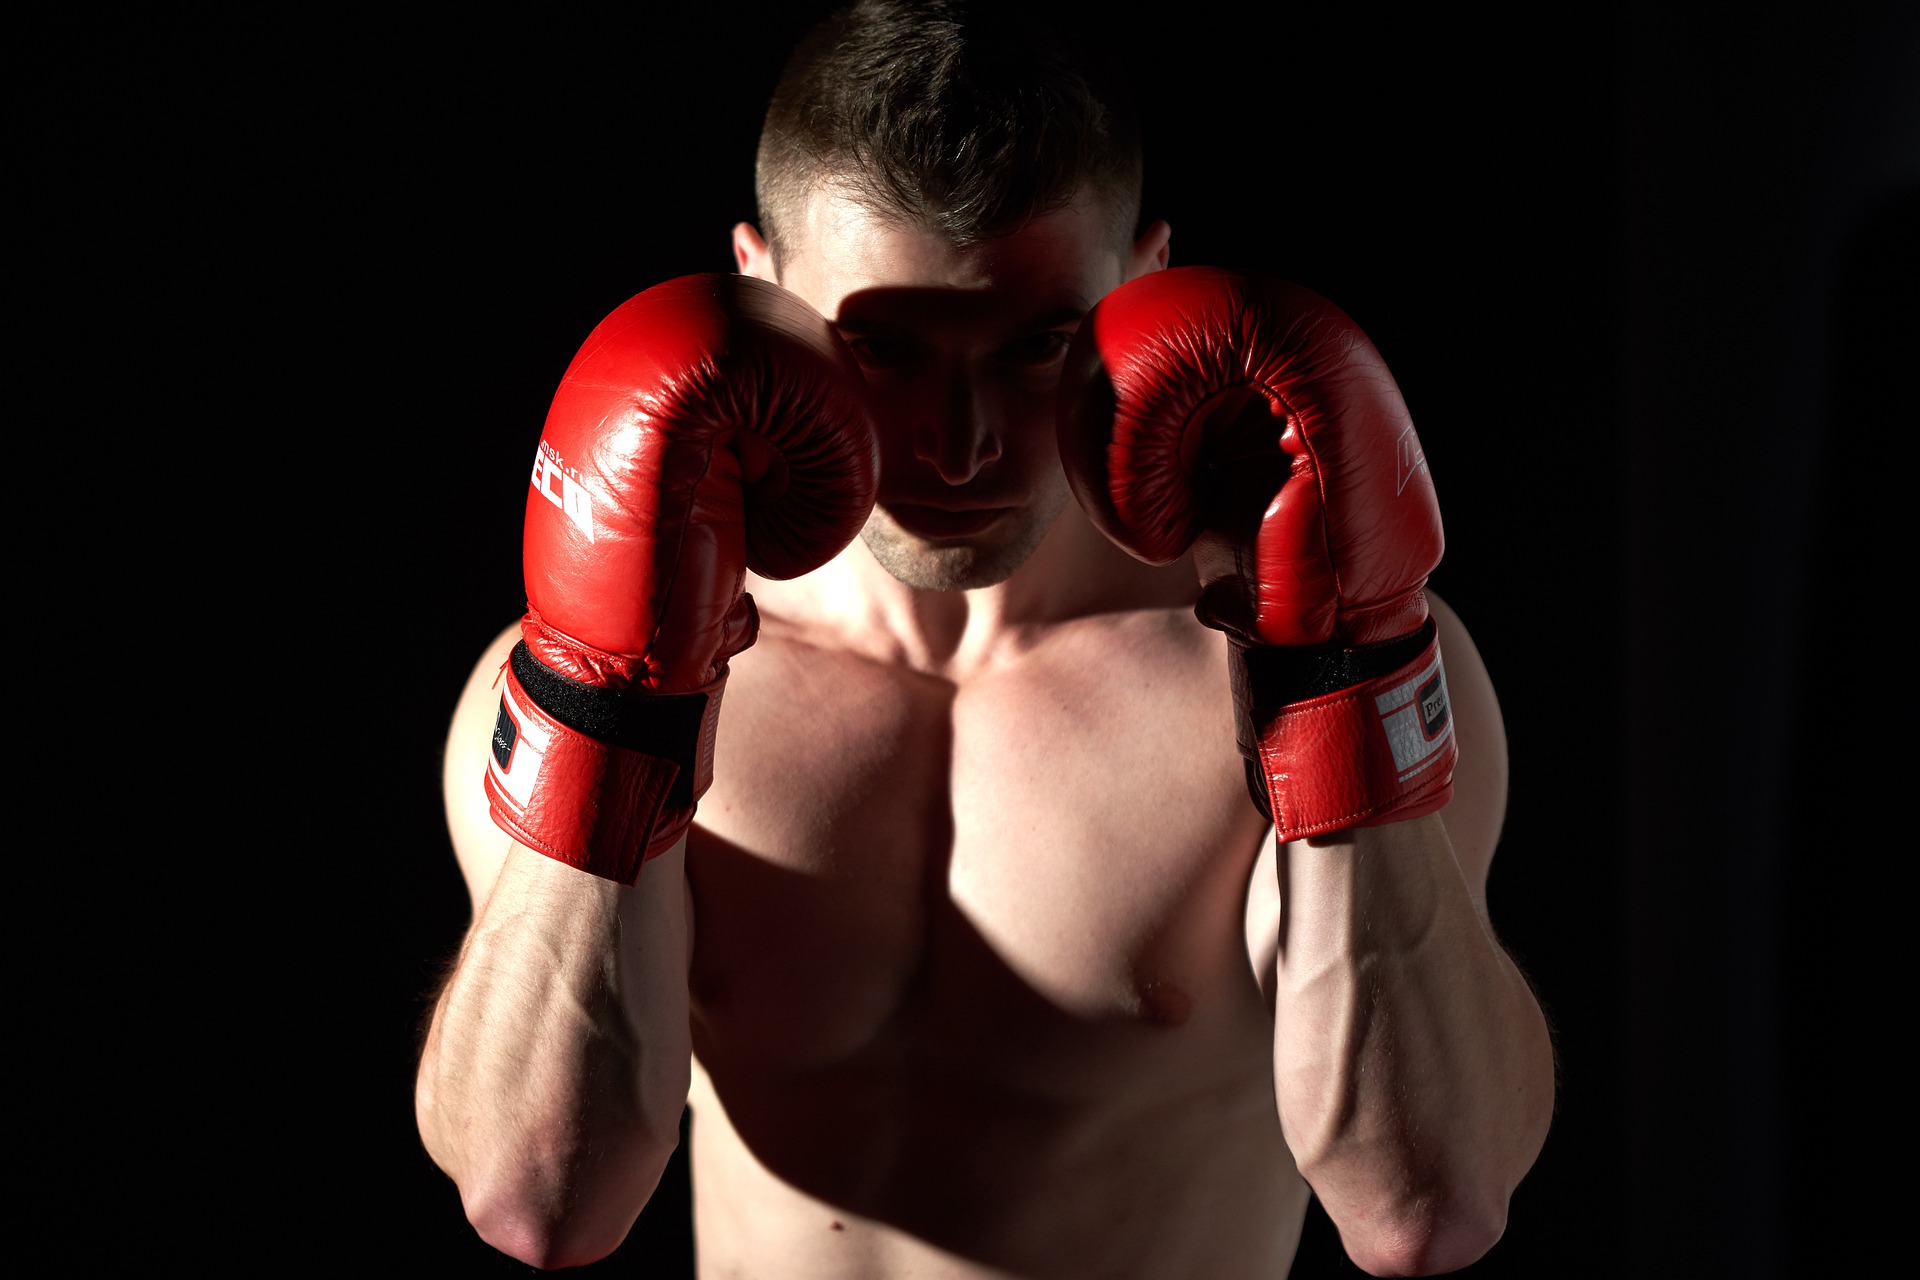 Musculation : variez vos séances avec un entraînement inspiré de la boxe !